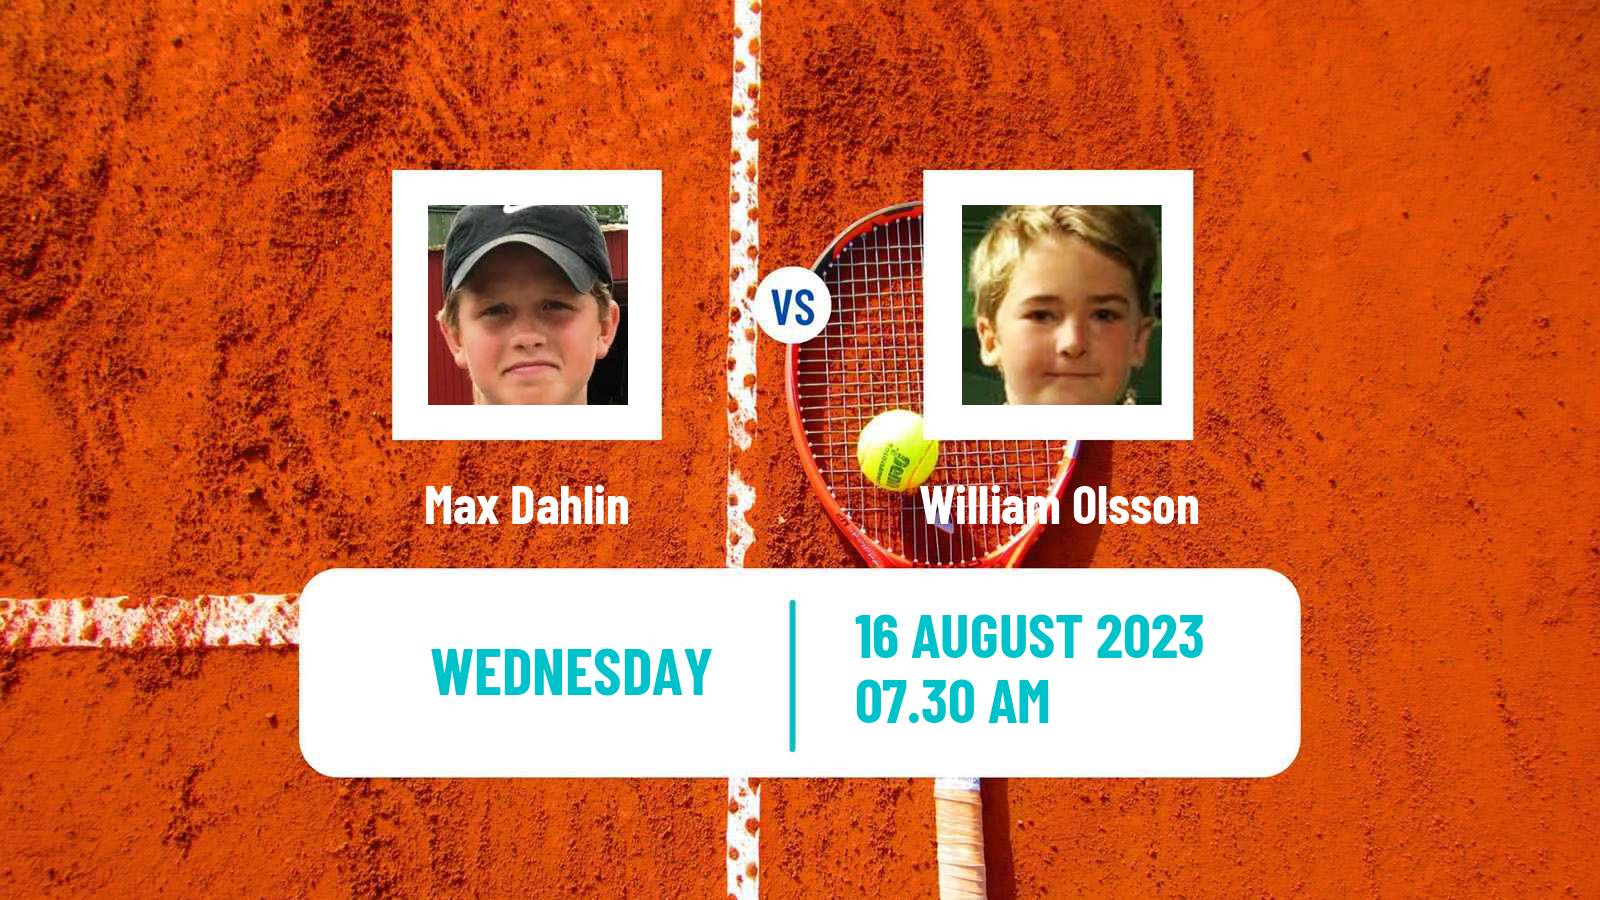 Tennis ITF M25 Ystad Men Max Dahlin - William Olsson